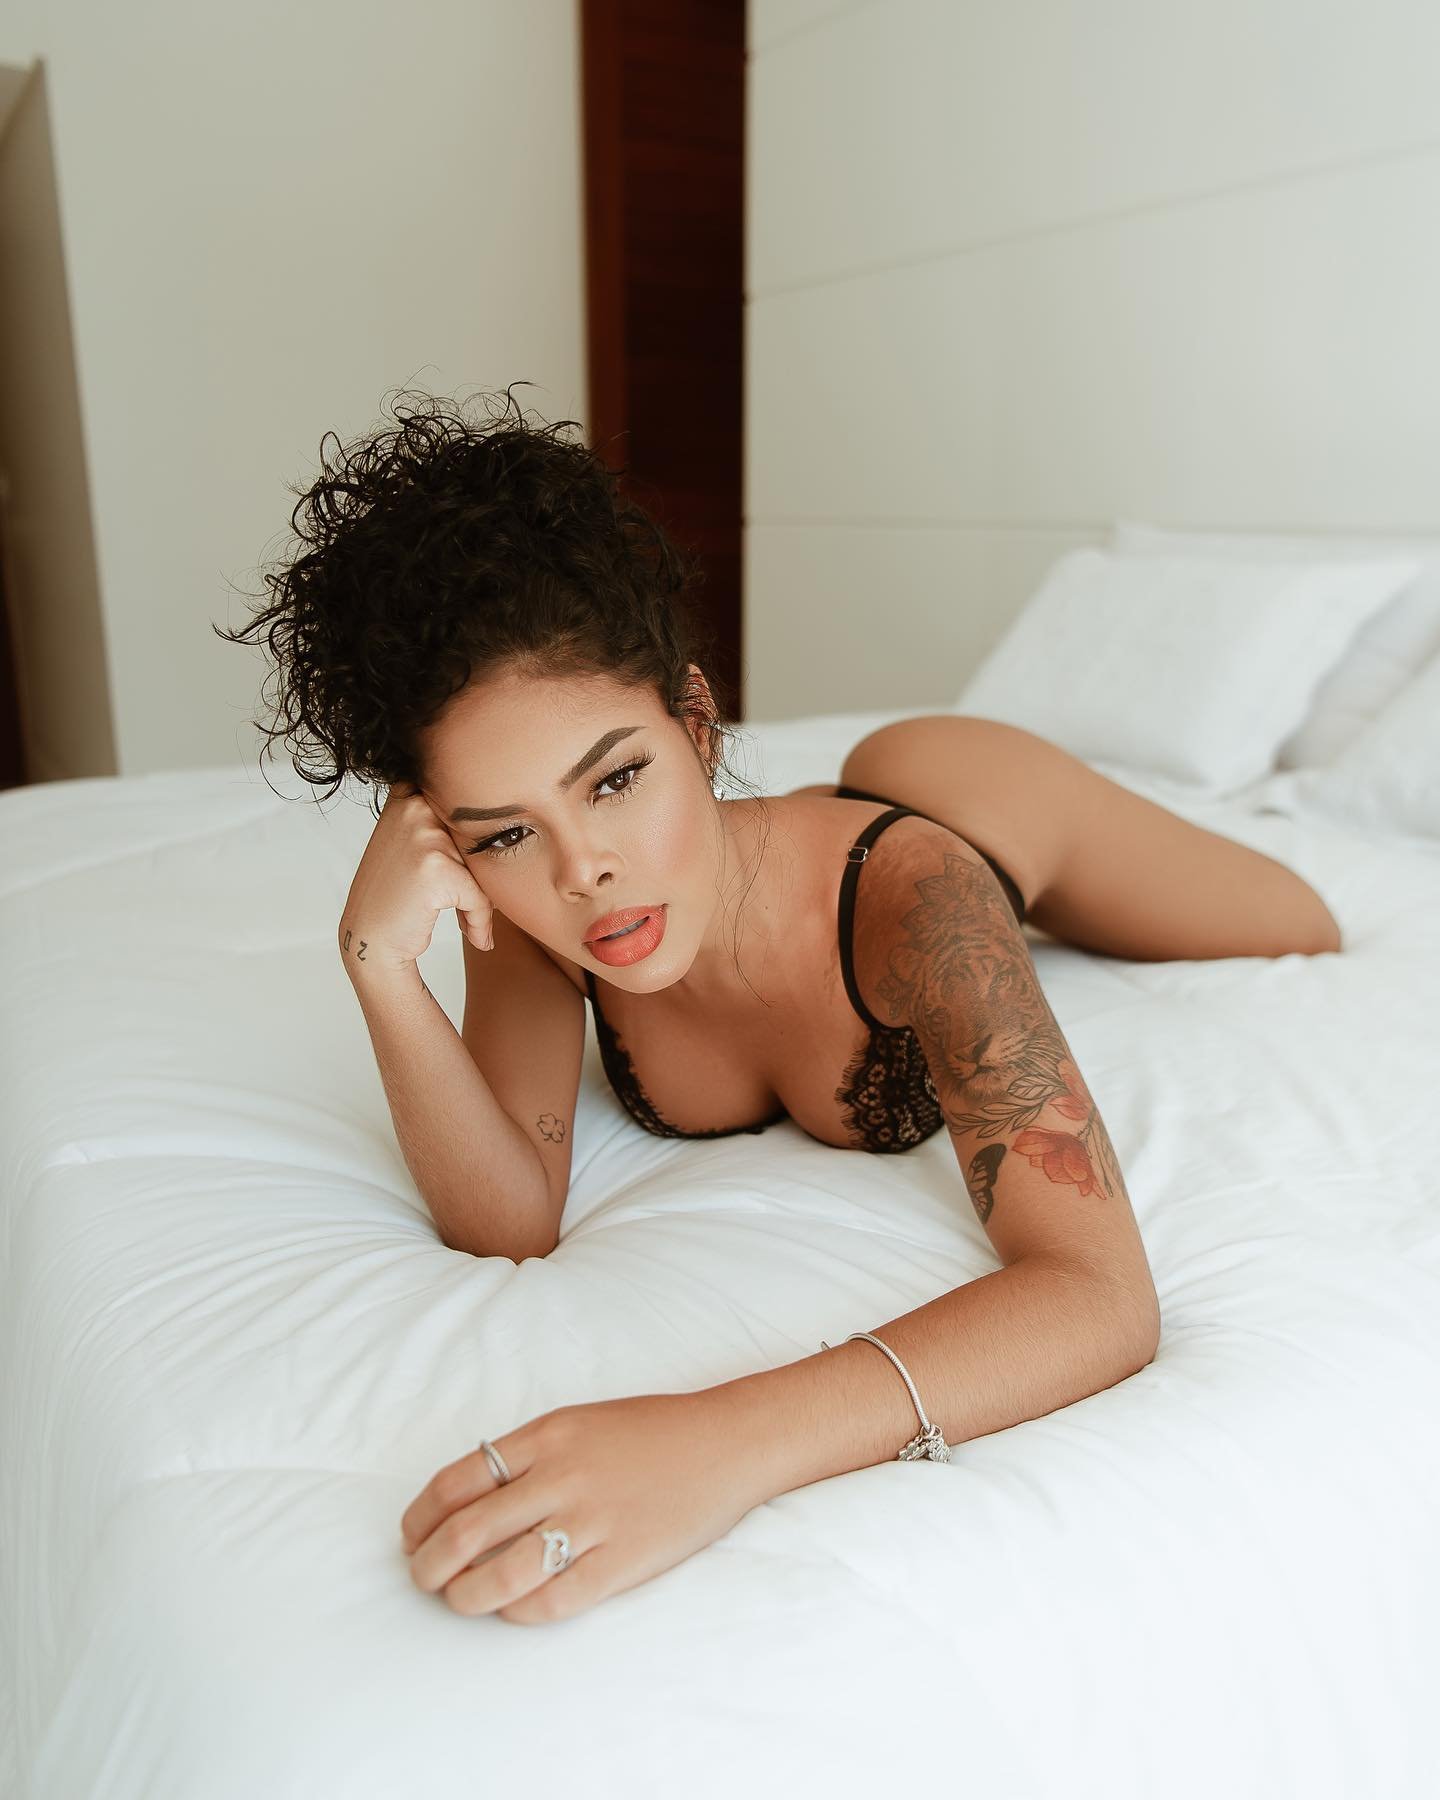 Adalto Jr Fotografo - Modelo negra na cama de lingerie preta